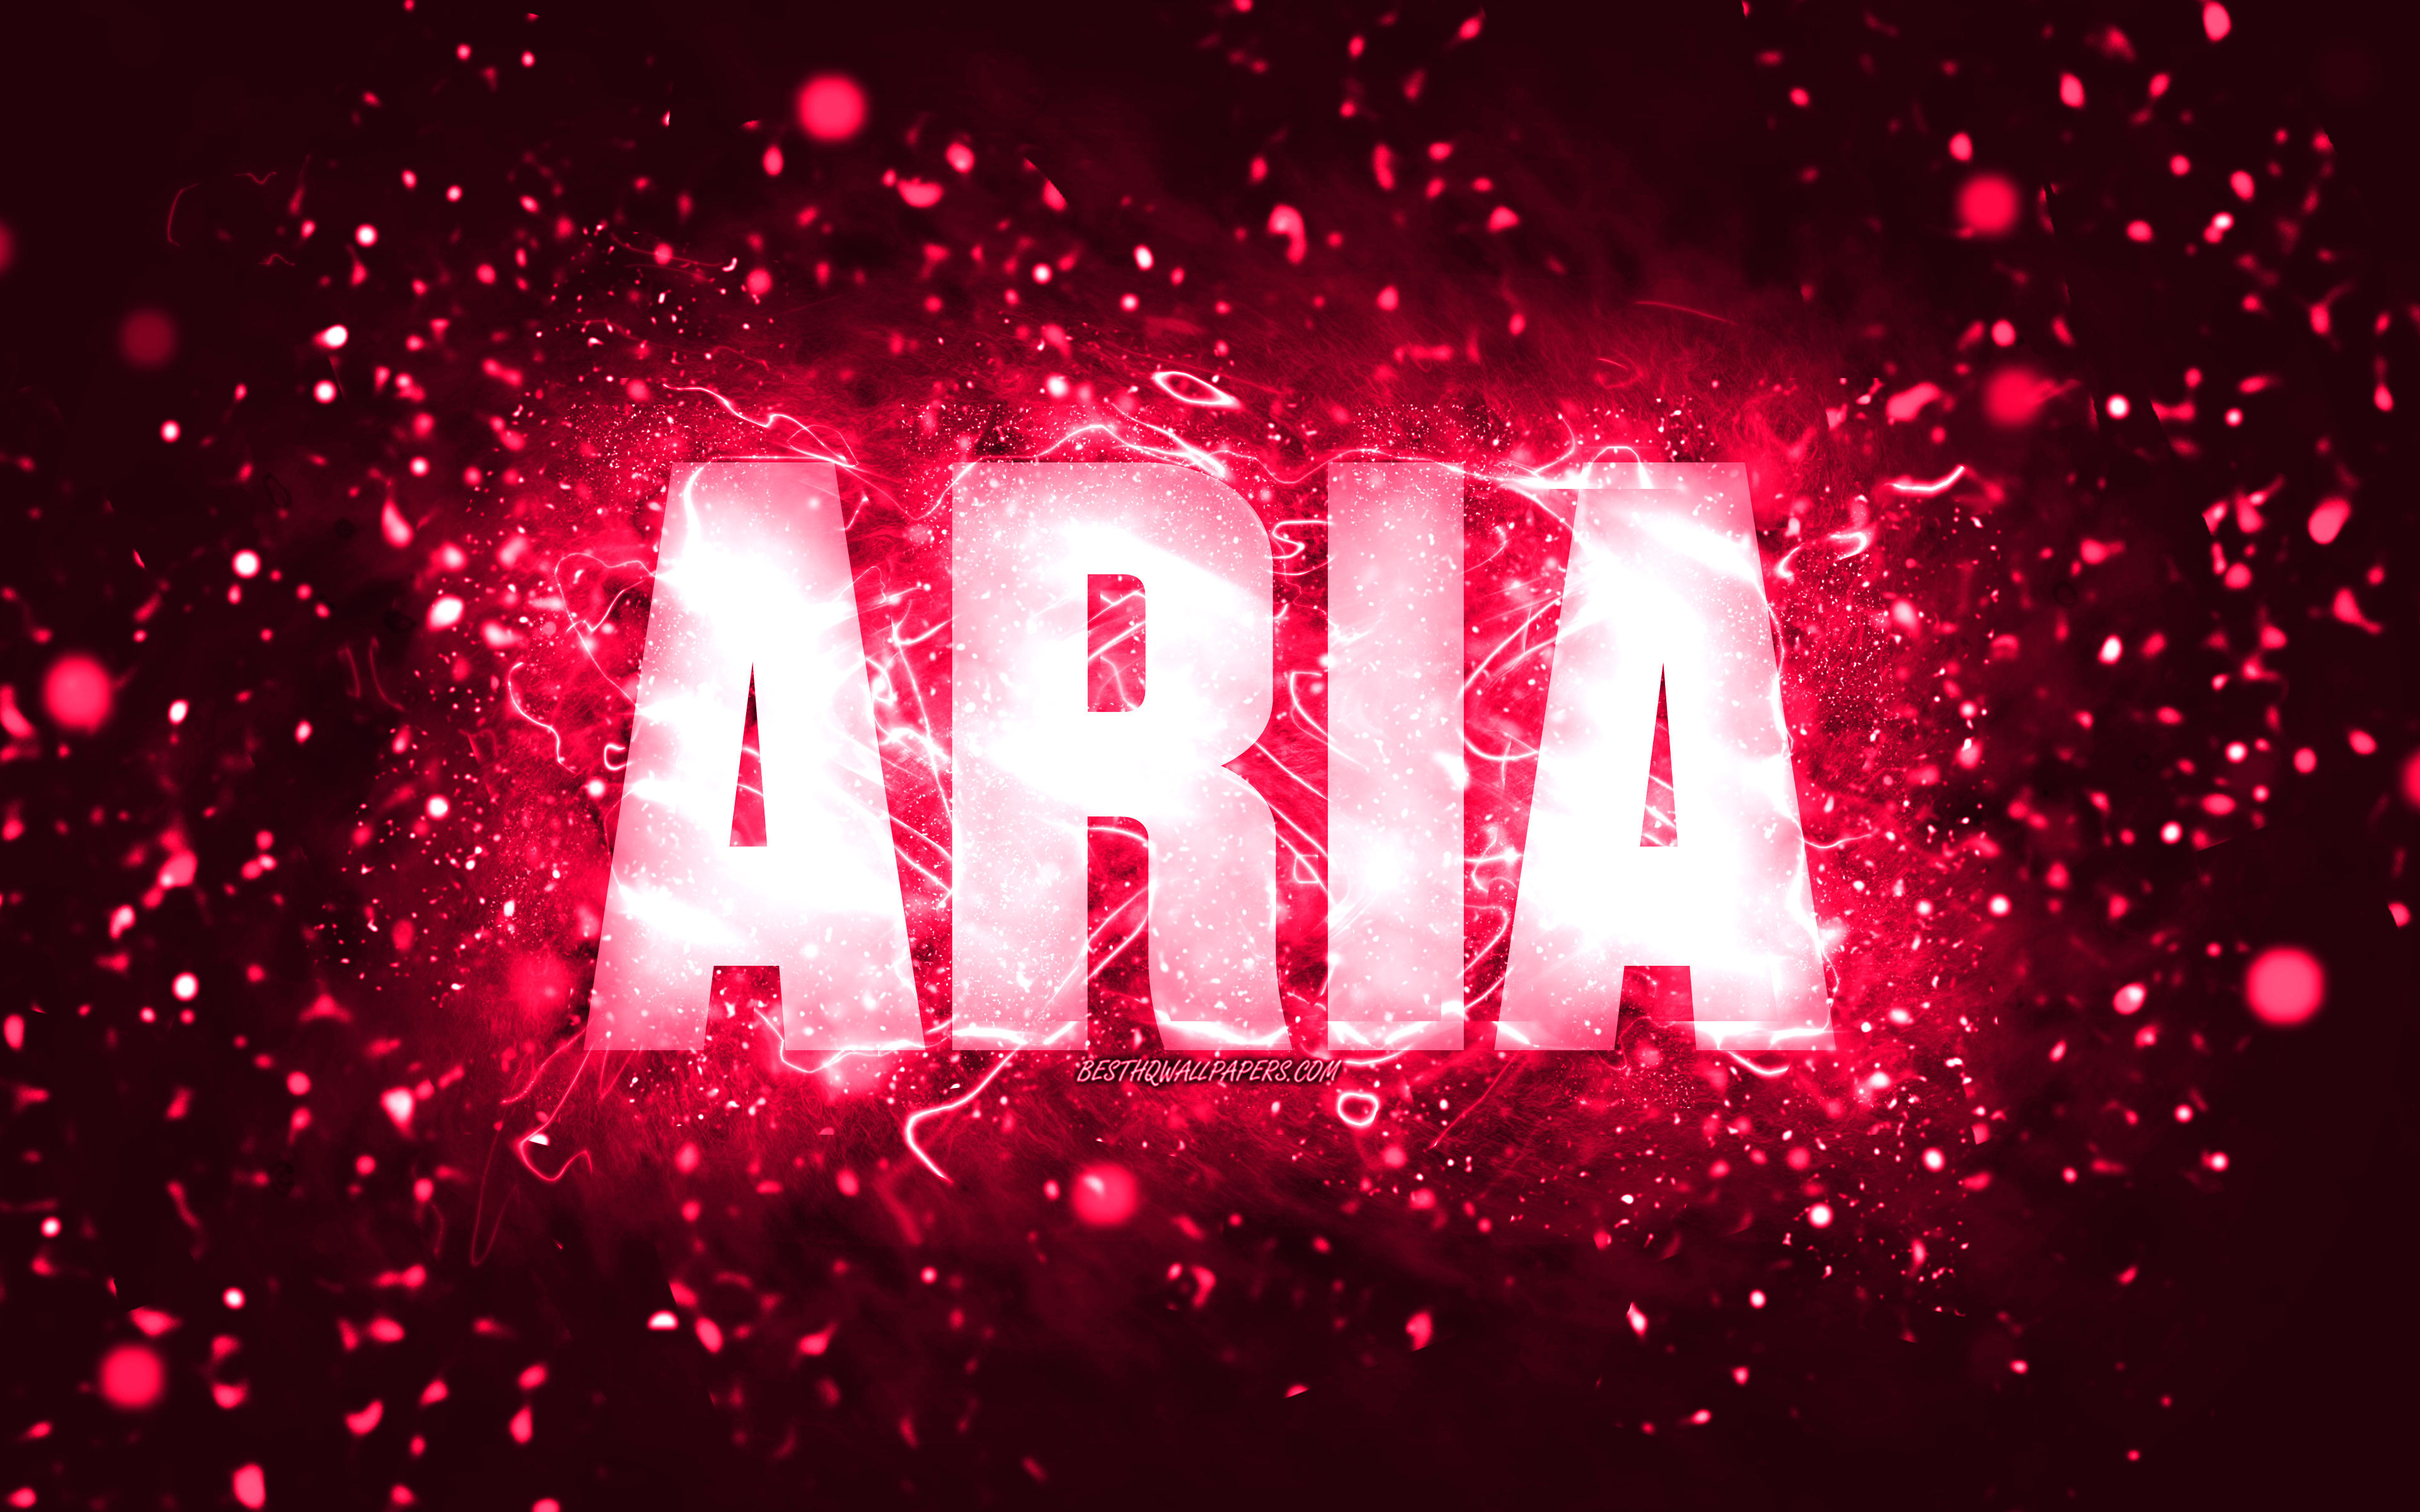 Aria name